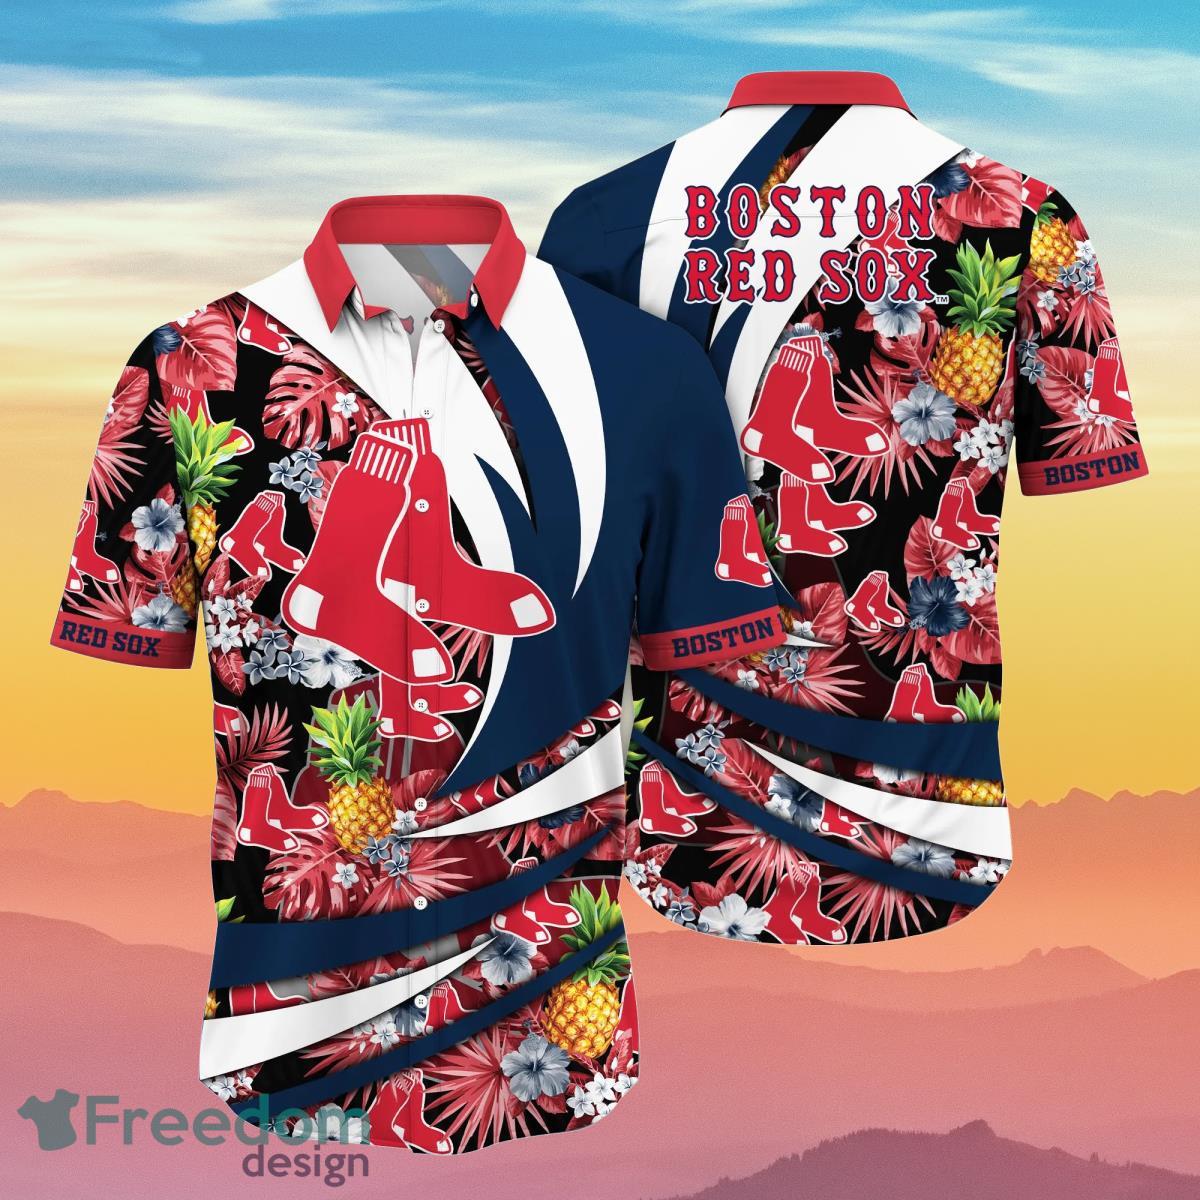 St. Louis Cardinals MLB Flower Hawaiian Shirt Great Gift For Men Women Fans  - Freedomdesign